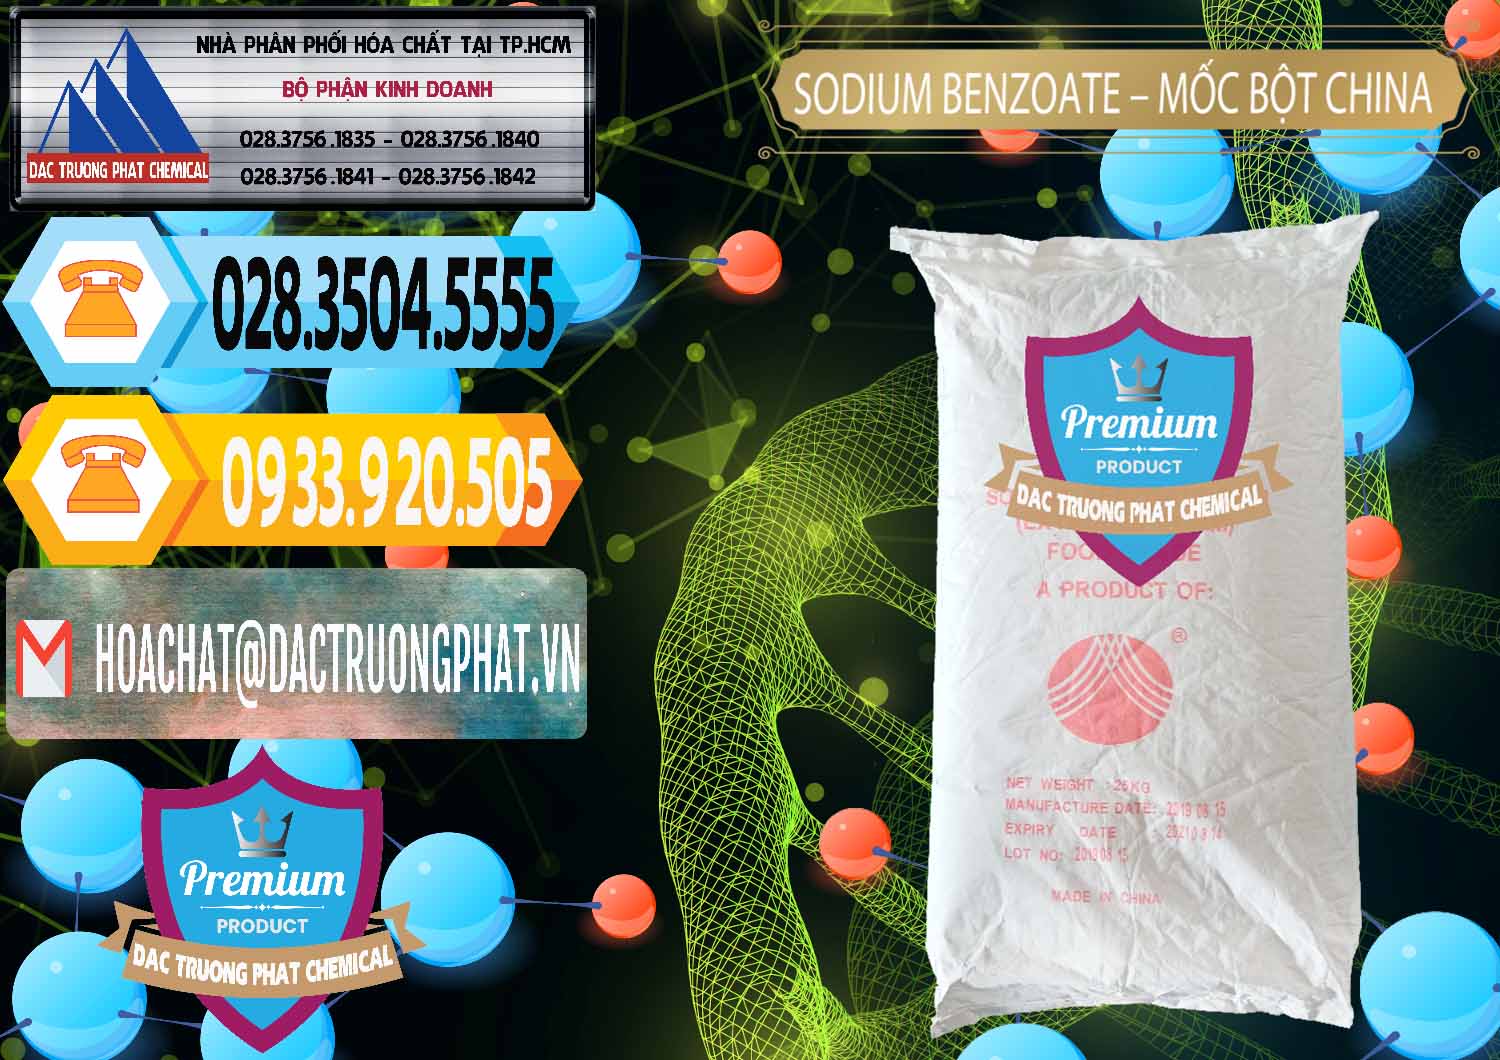 Nơi chuyên cung ứng - bán Sodium Benzoate - Mốc Bột Chữ Cam Food Grade Trung Quốc China - 0135 - Nơi chuyên bán _ phân phối hóa chất tại TP.HCM - hoachattayrua.net